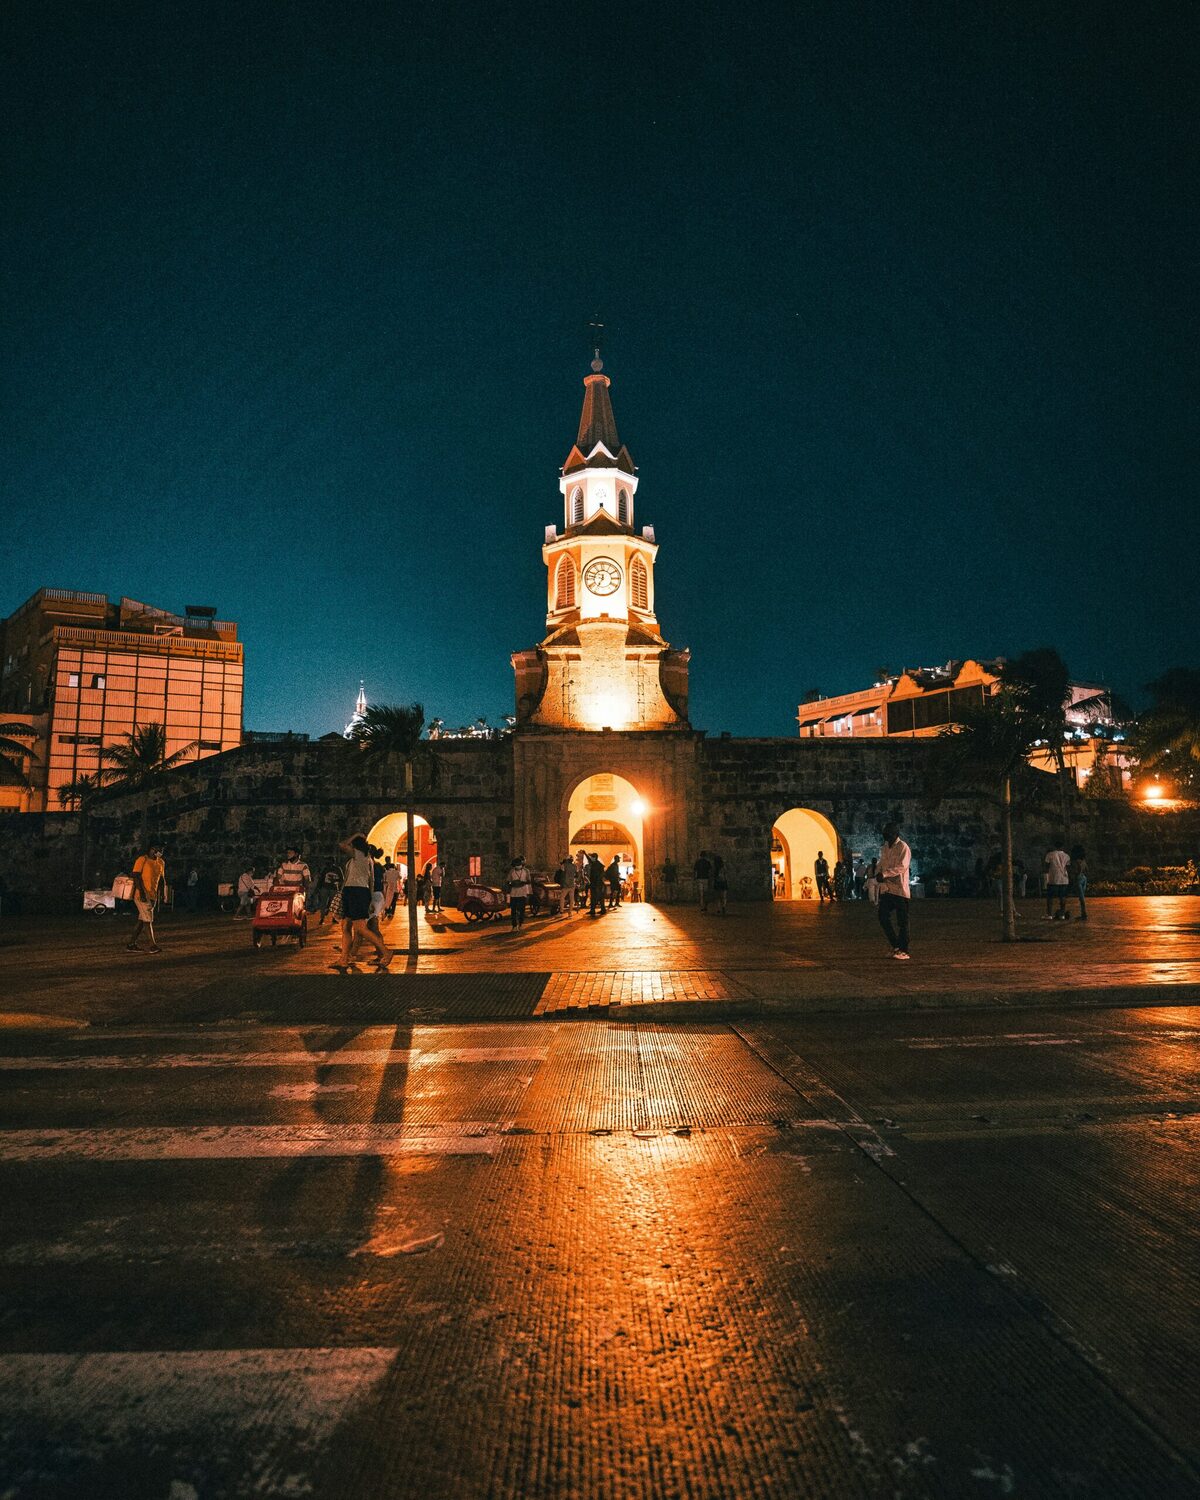 A Torre do Relógio, ou Puerta del Reloj em espanhol, serve como a principal entrada para o centro histórico de Cartagena das Índias.